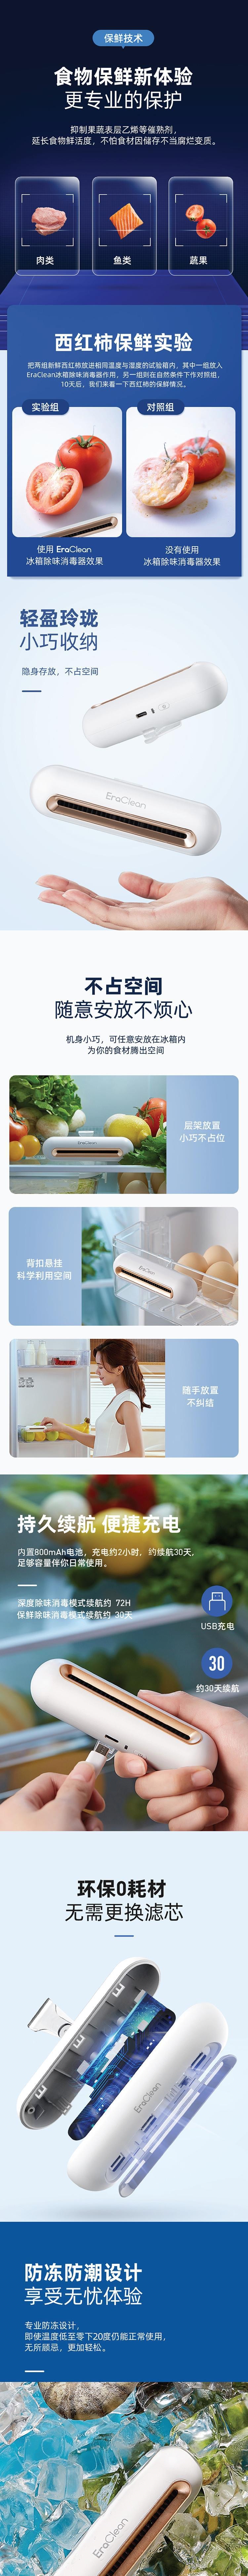 小米生态链 EraClean-世净冰箱除味贴升级版2Pro CW-BS02 白色